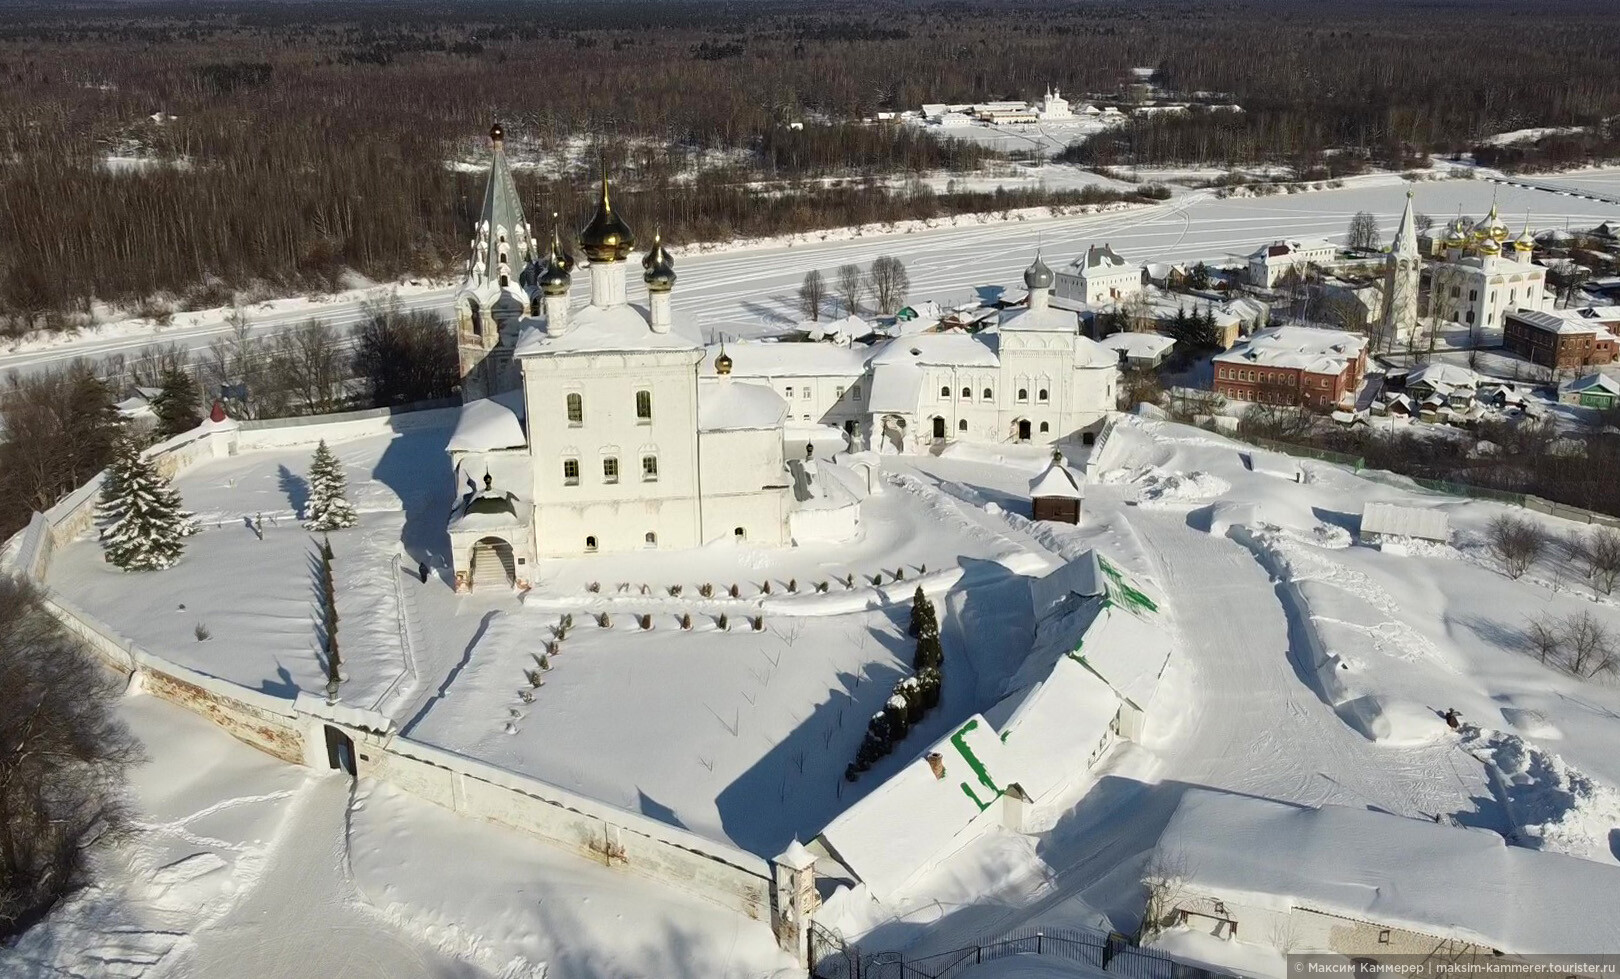 Гороховец Никольский монастырь зимой